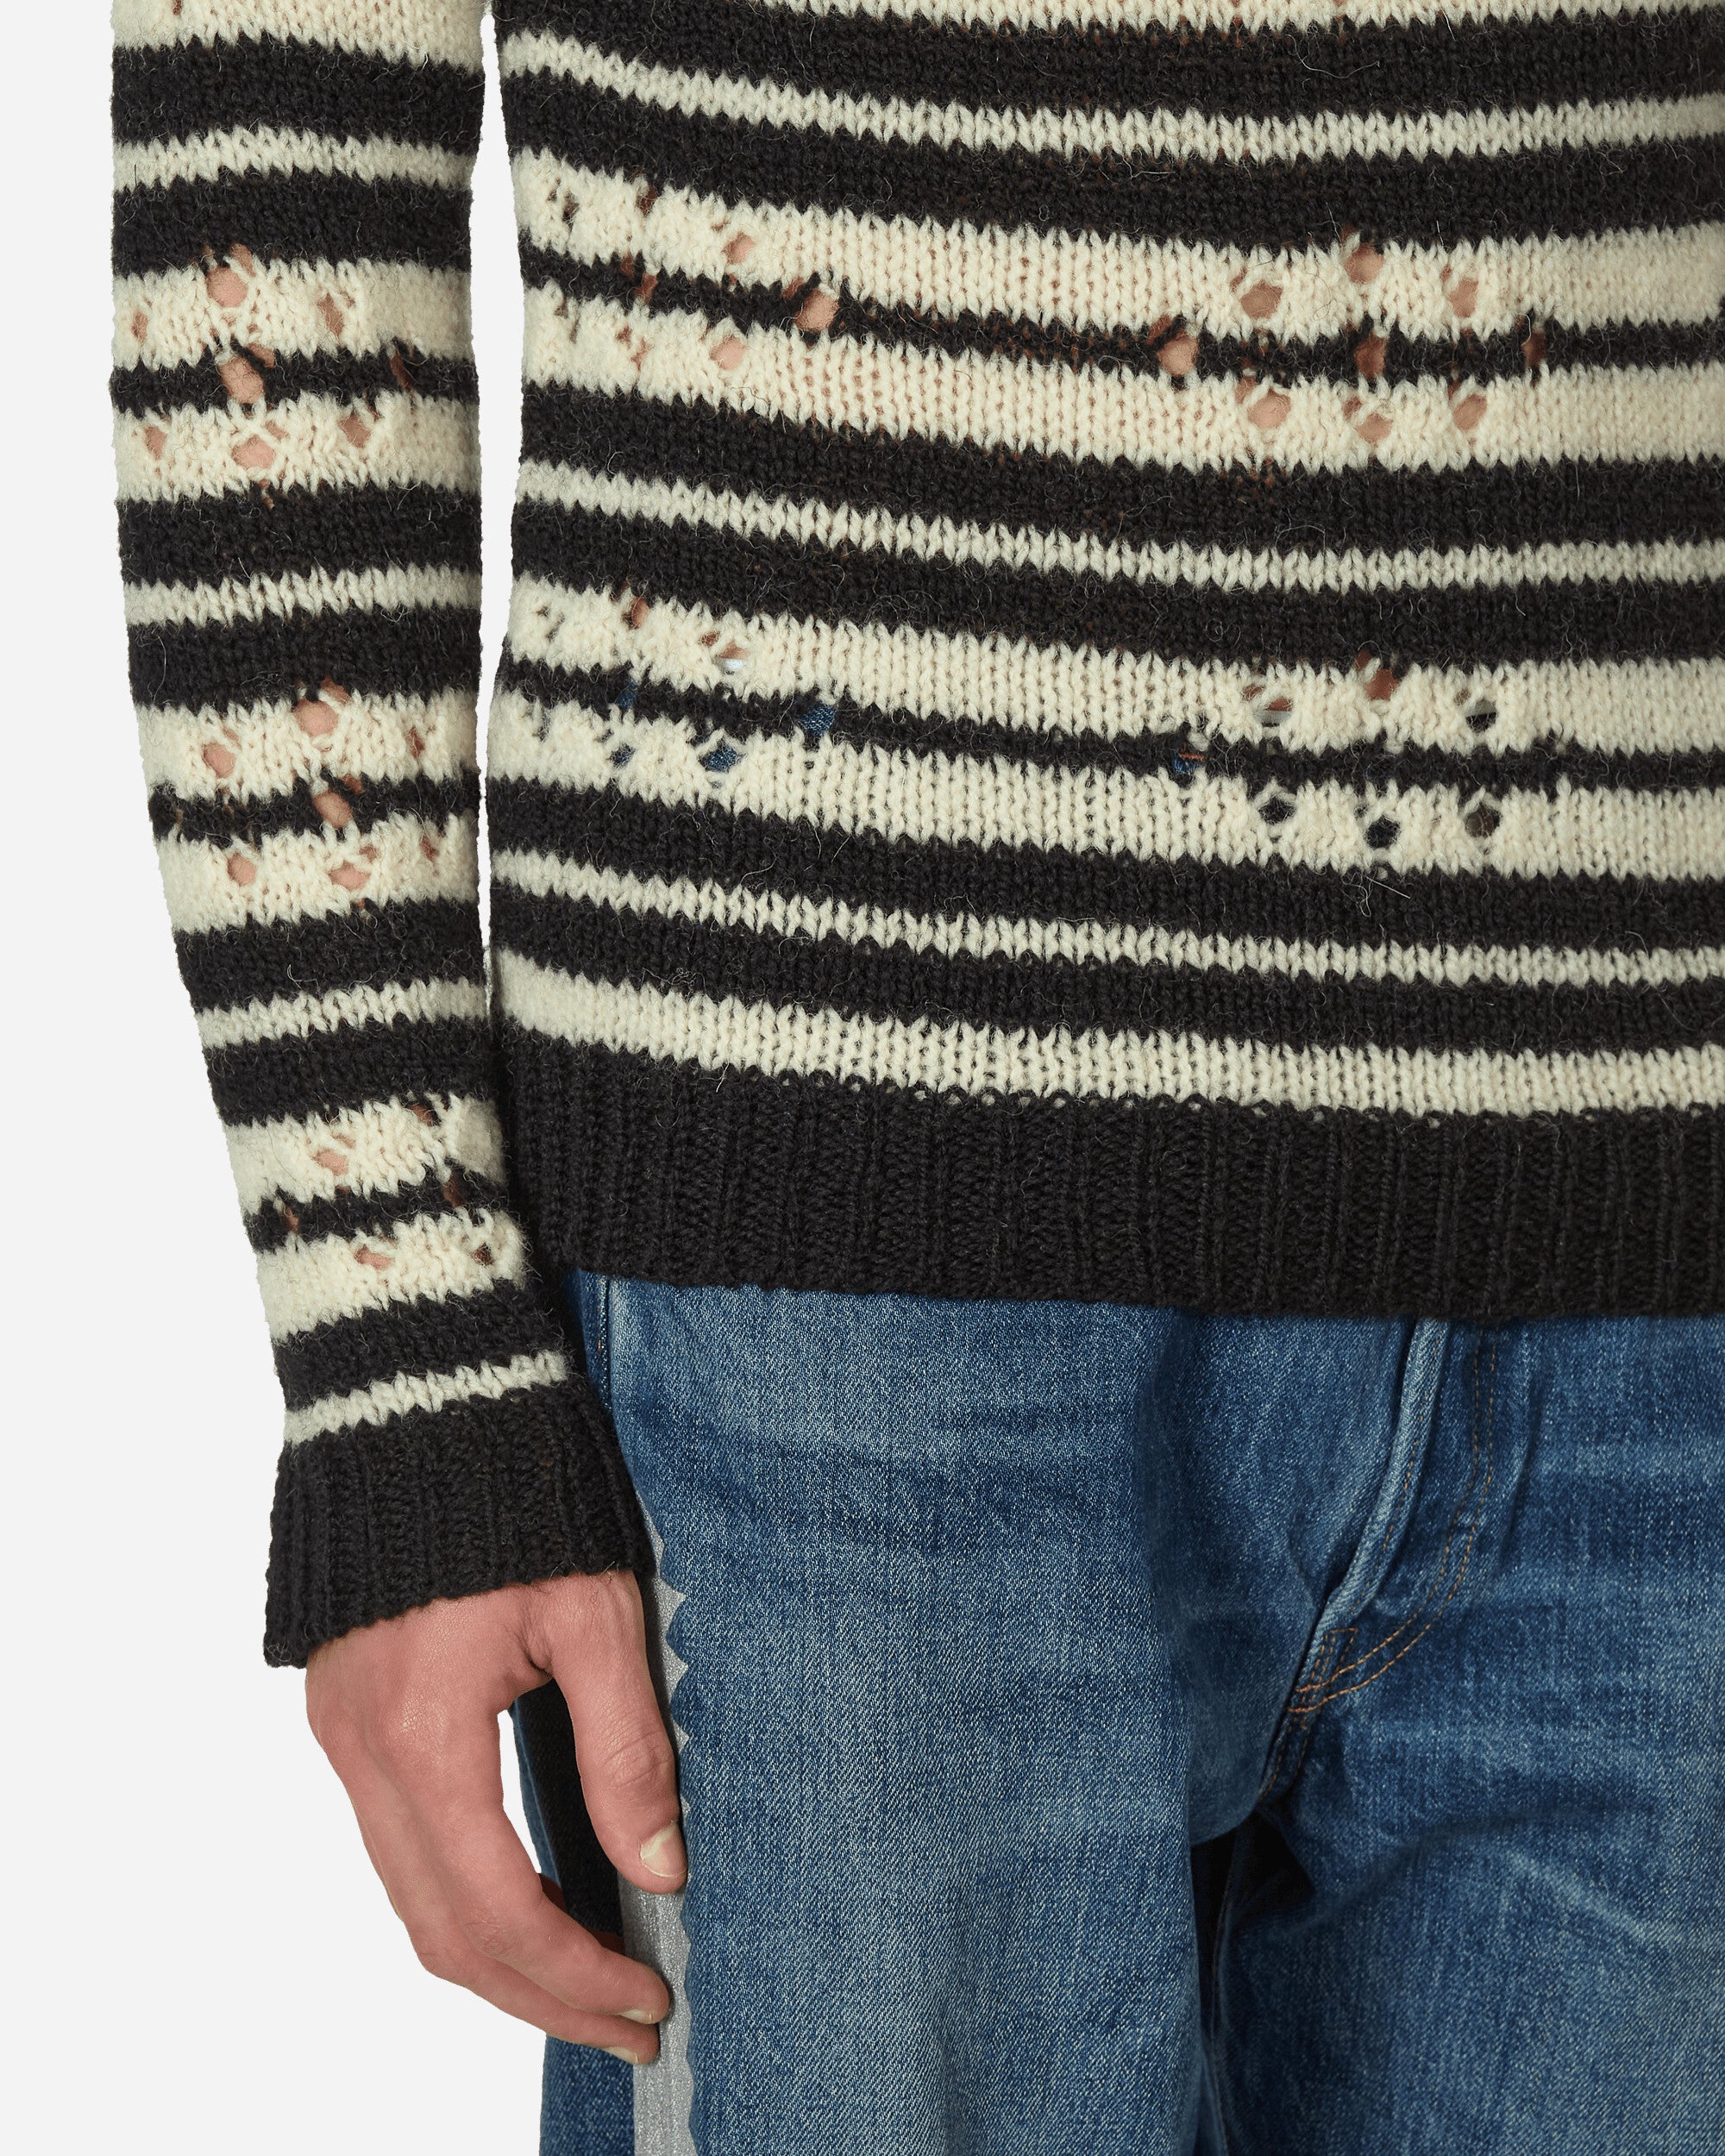 Dries Van Noten Mendel Knitwear Black Knitwears Sweaters 232-021215-7705 900